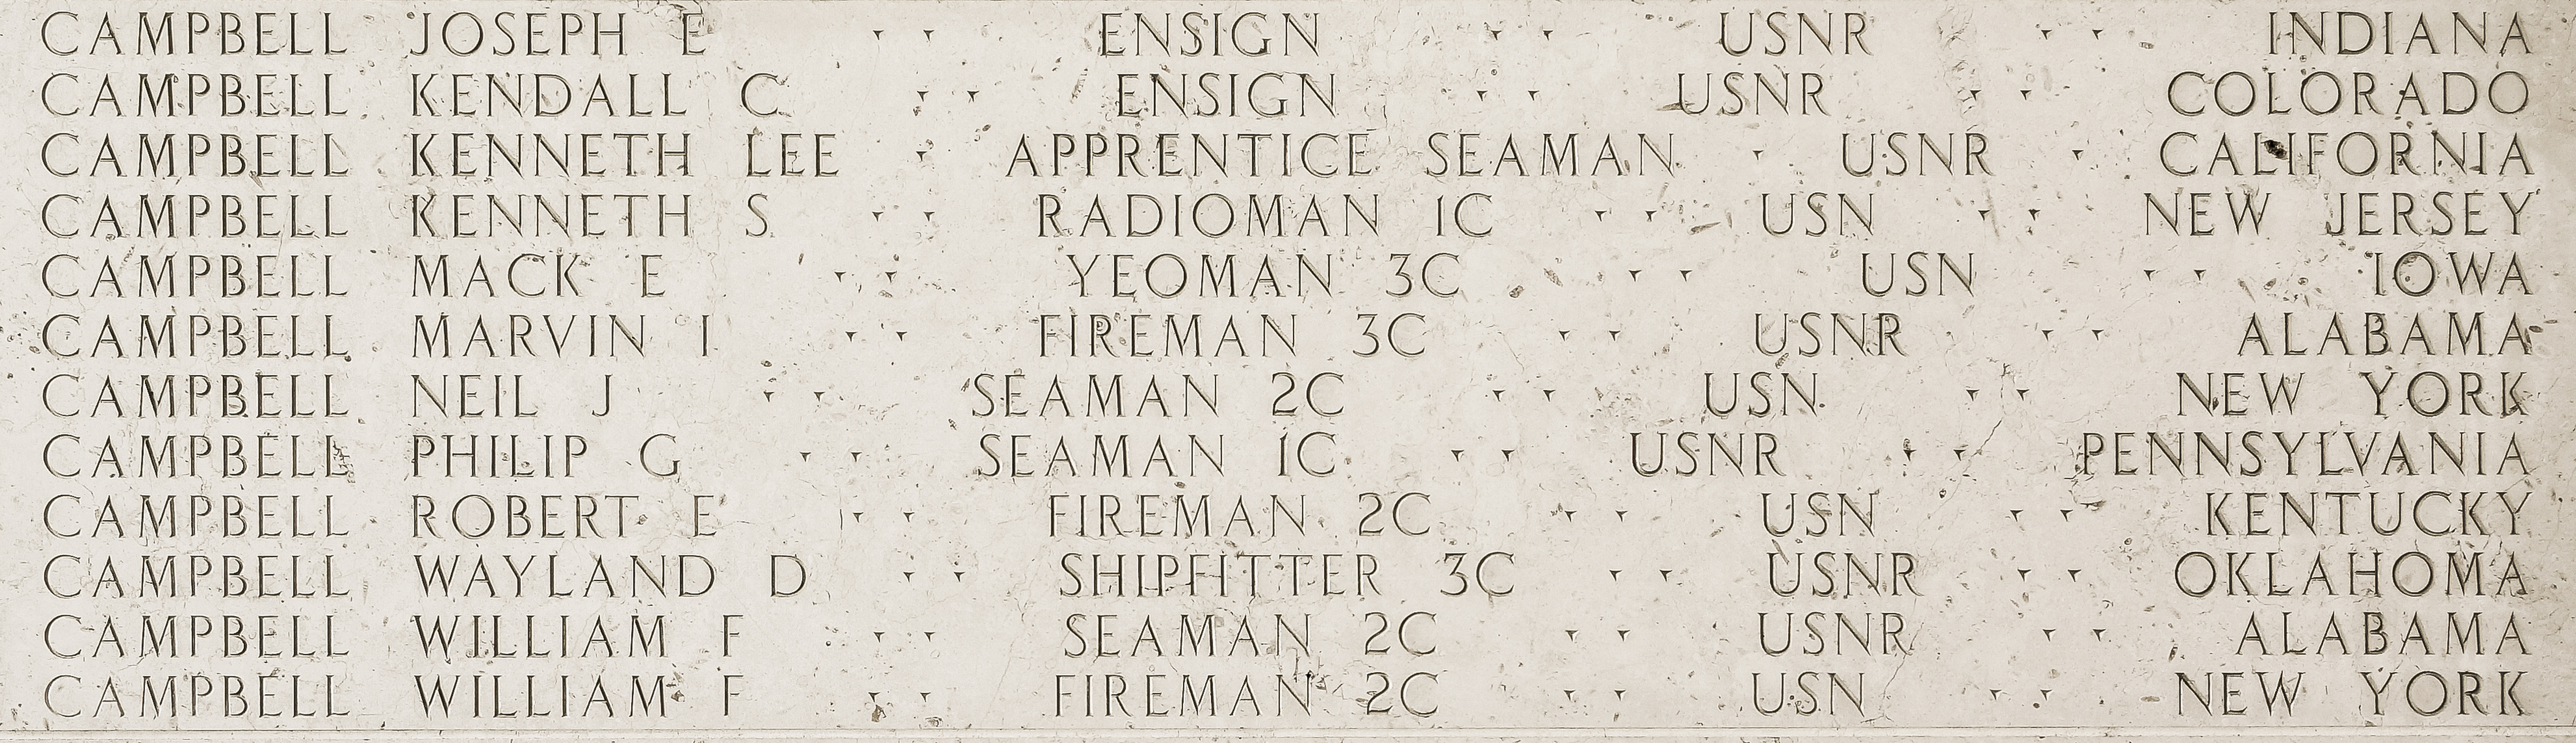 Robert E. Campbell, Fireman Second Class